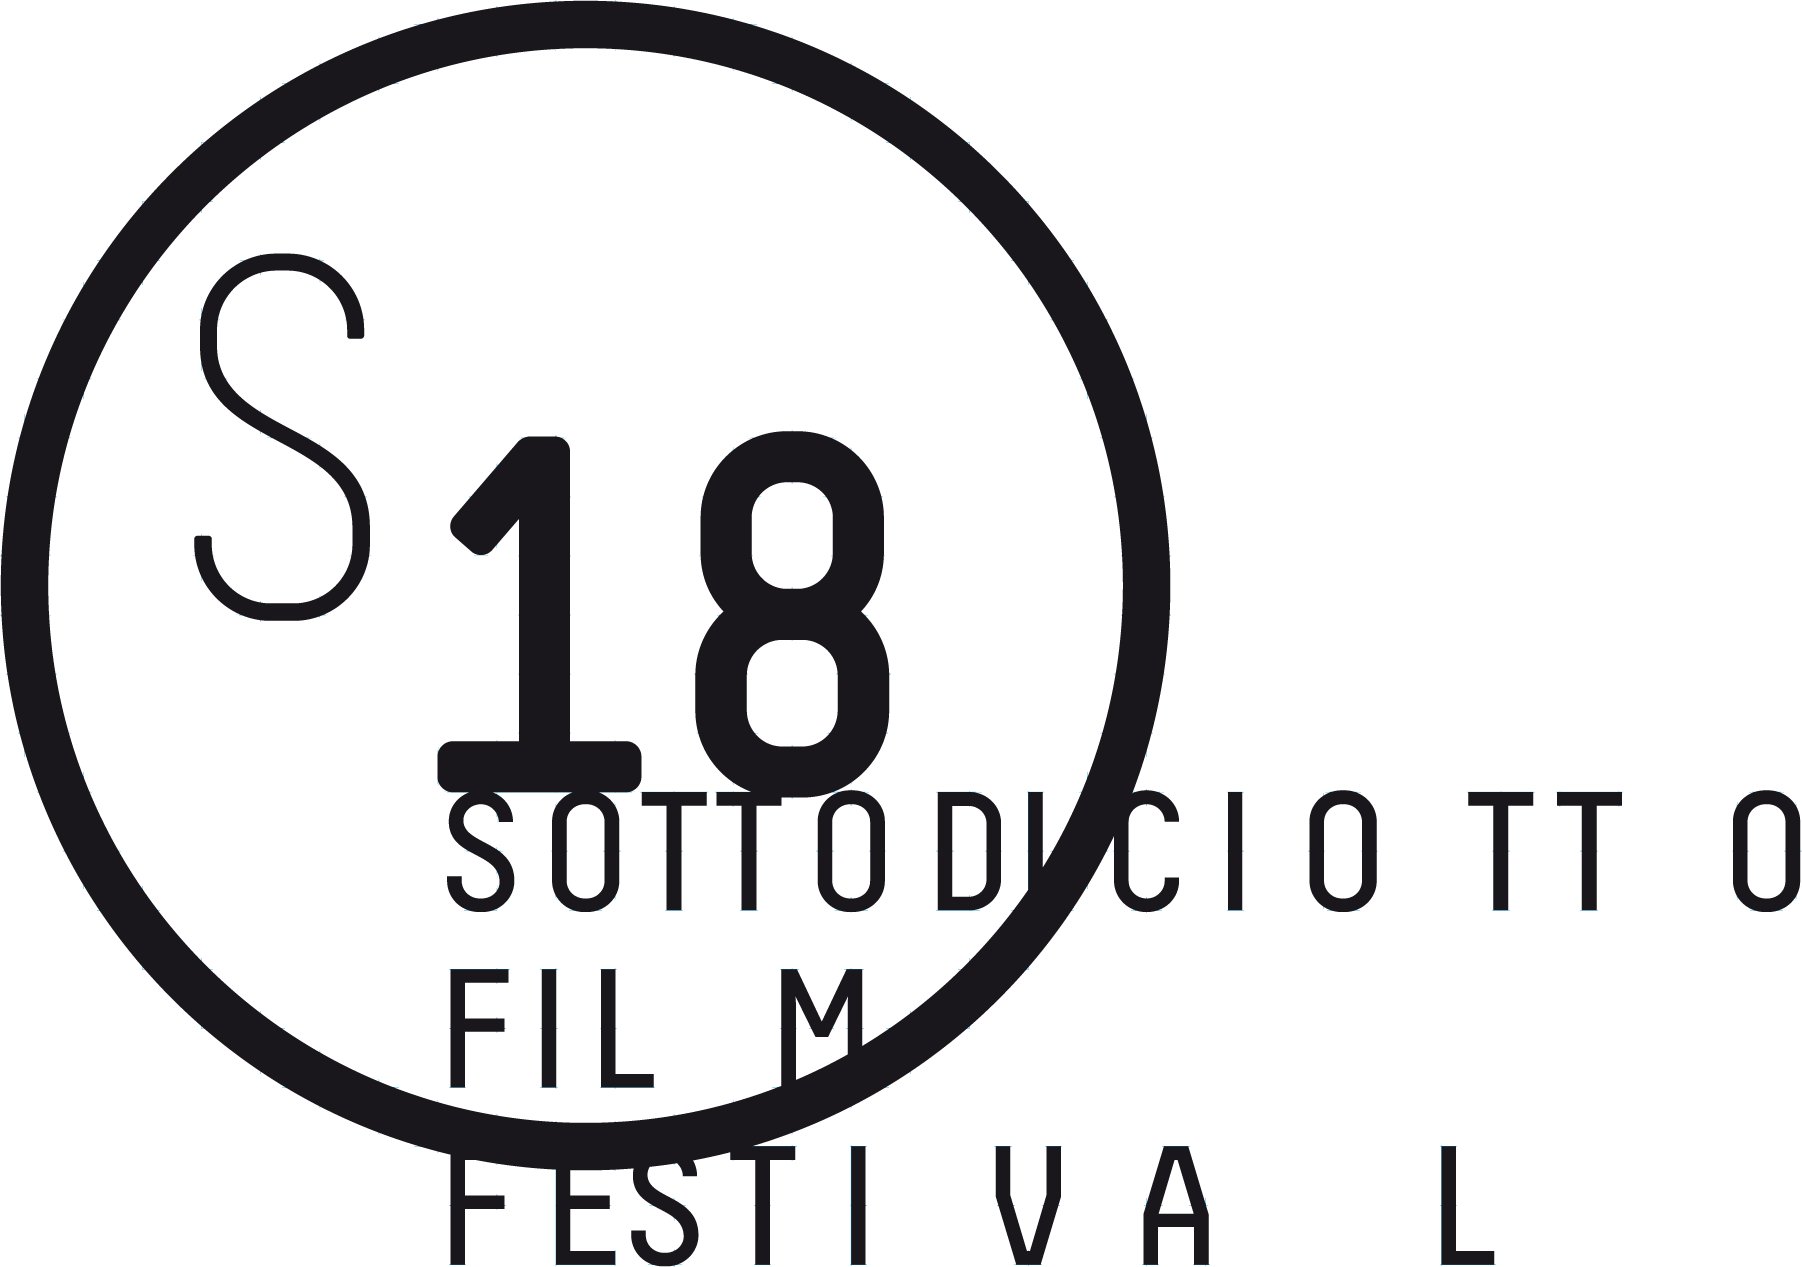 Ricca rassegna alla XVIII Edizione di Sottodiciotto Film Festival